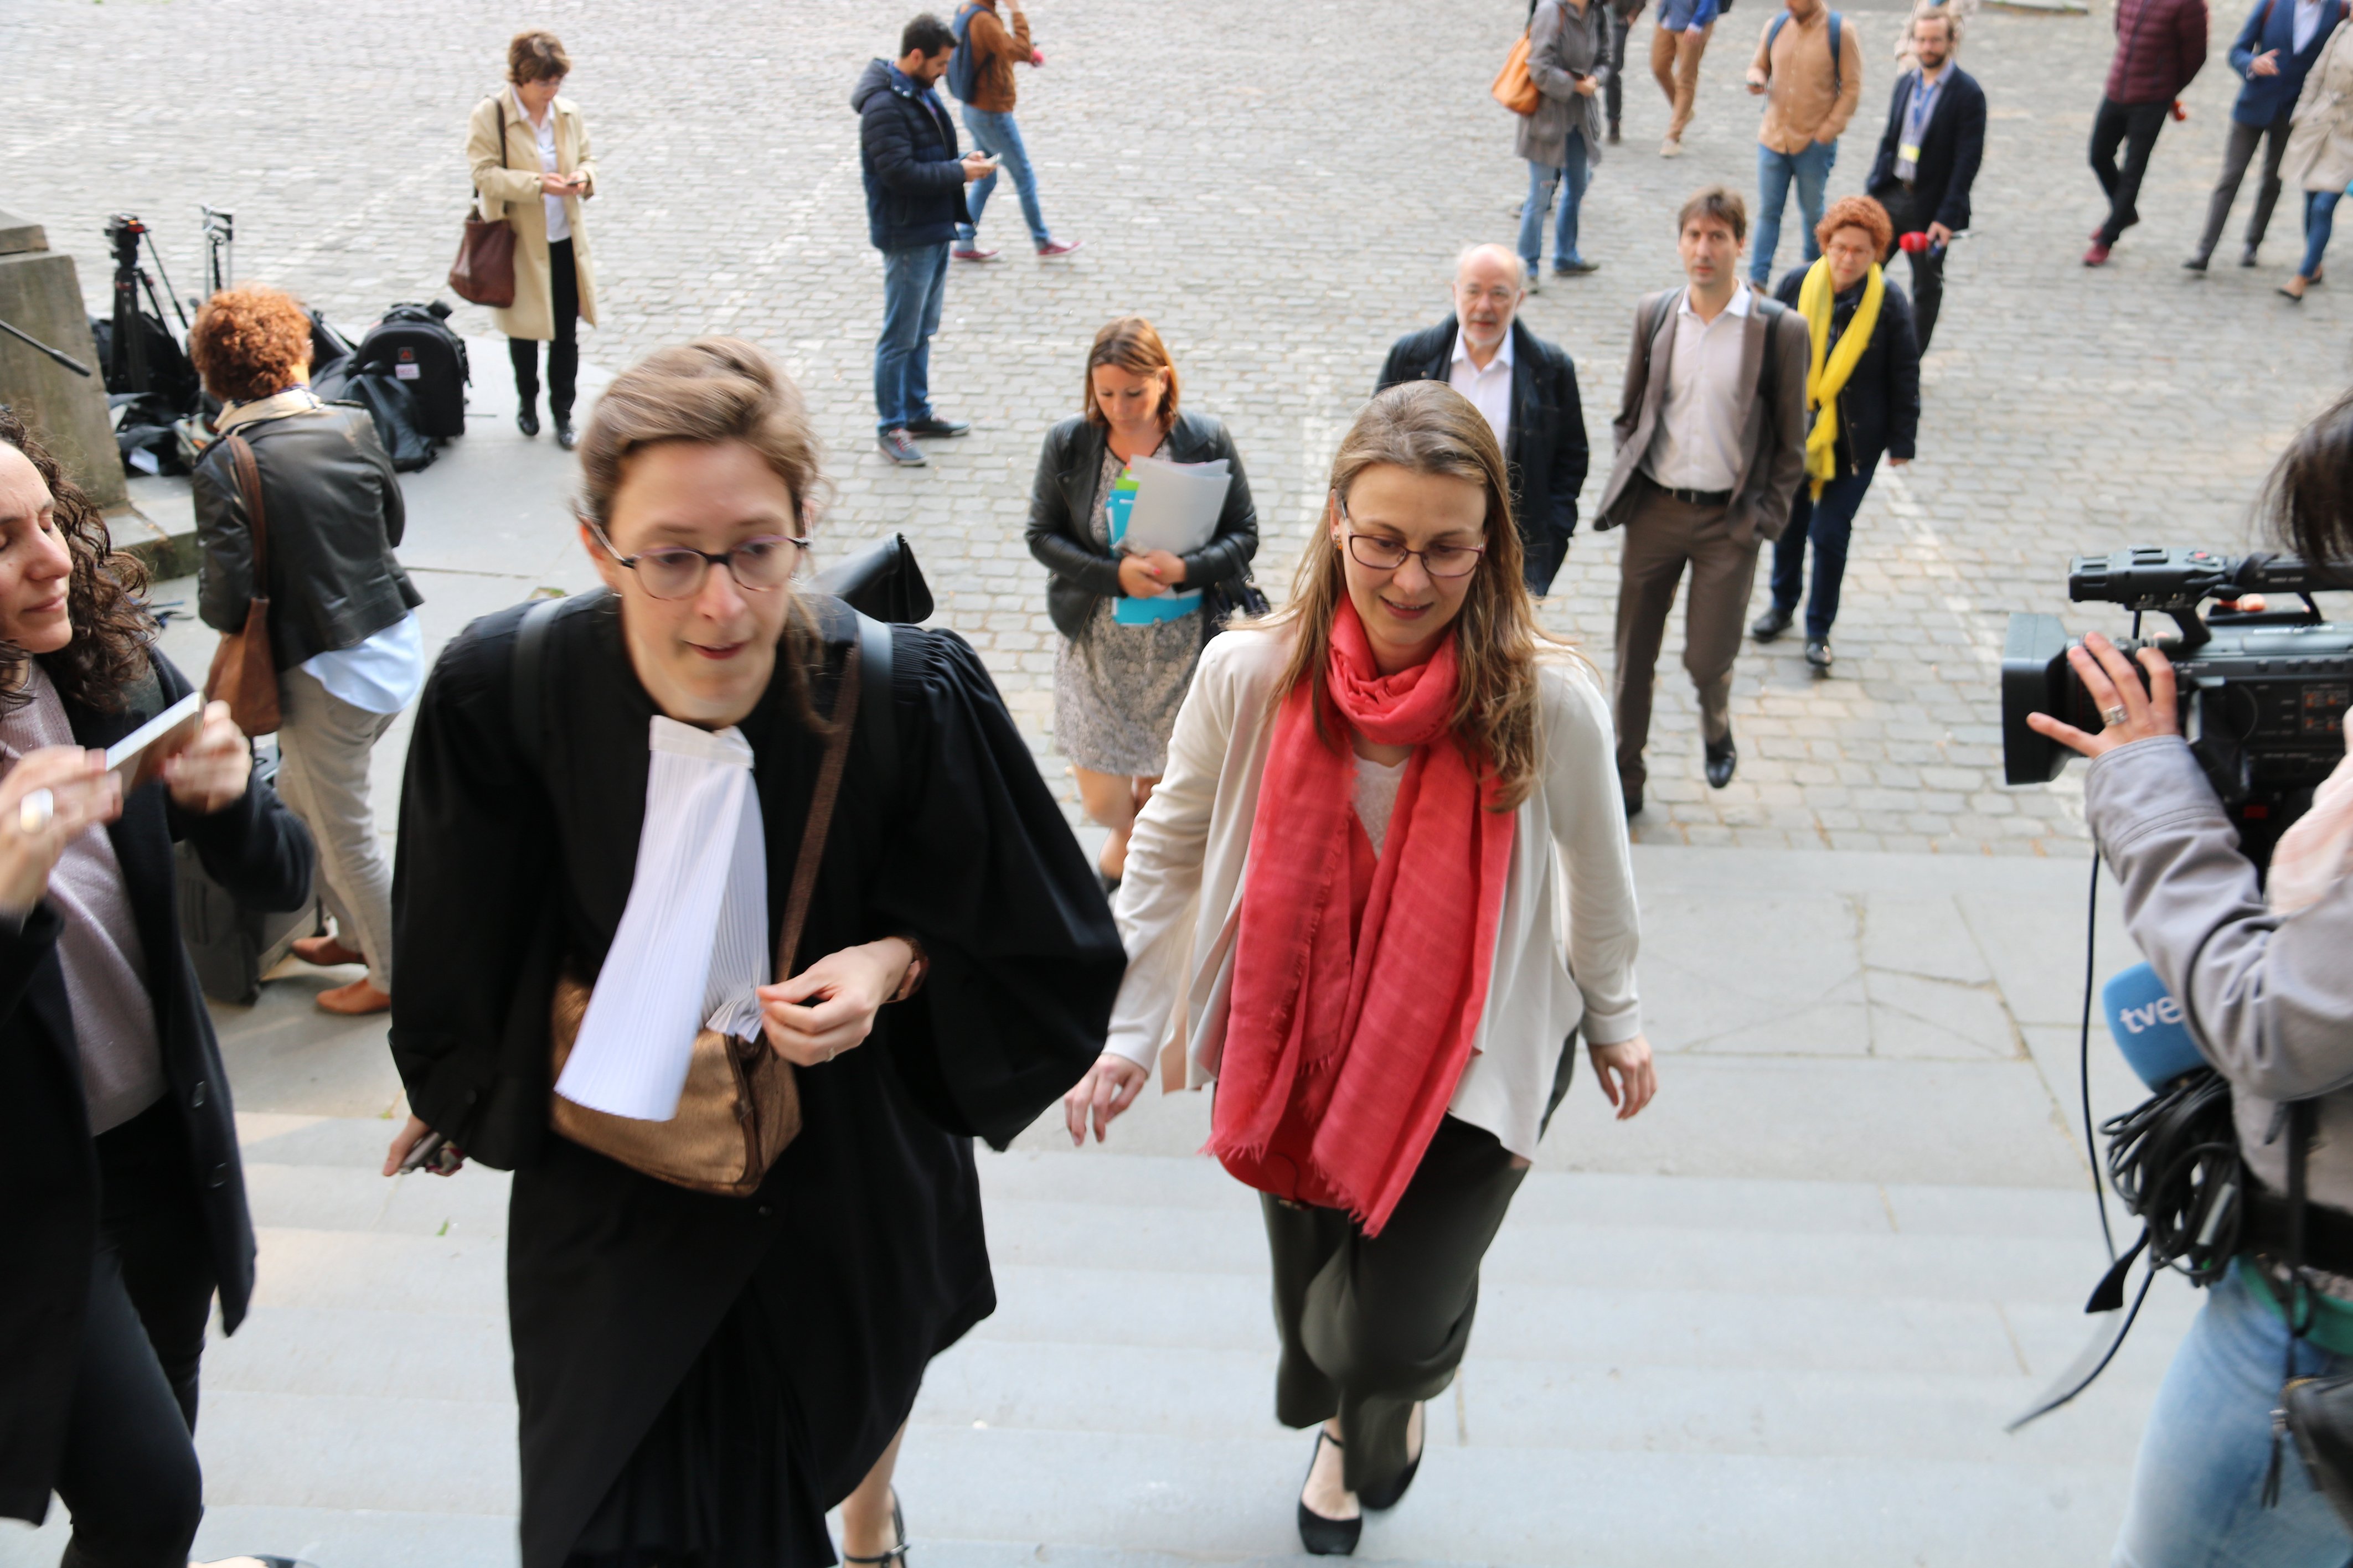 La decisió judicial belga pot afectar l'euroordre de Puigdemont, diu 'Le Soir'